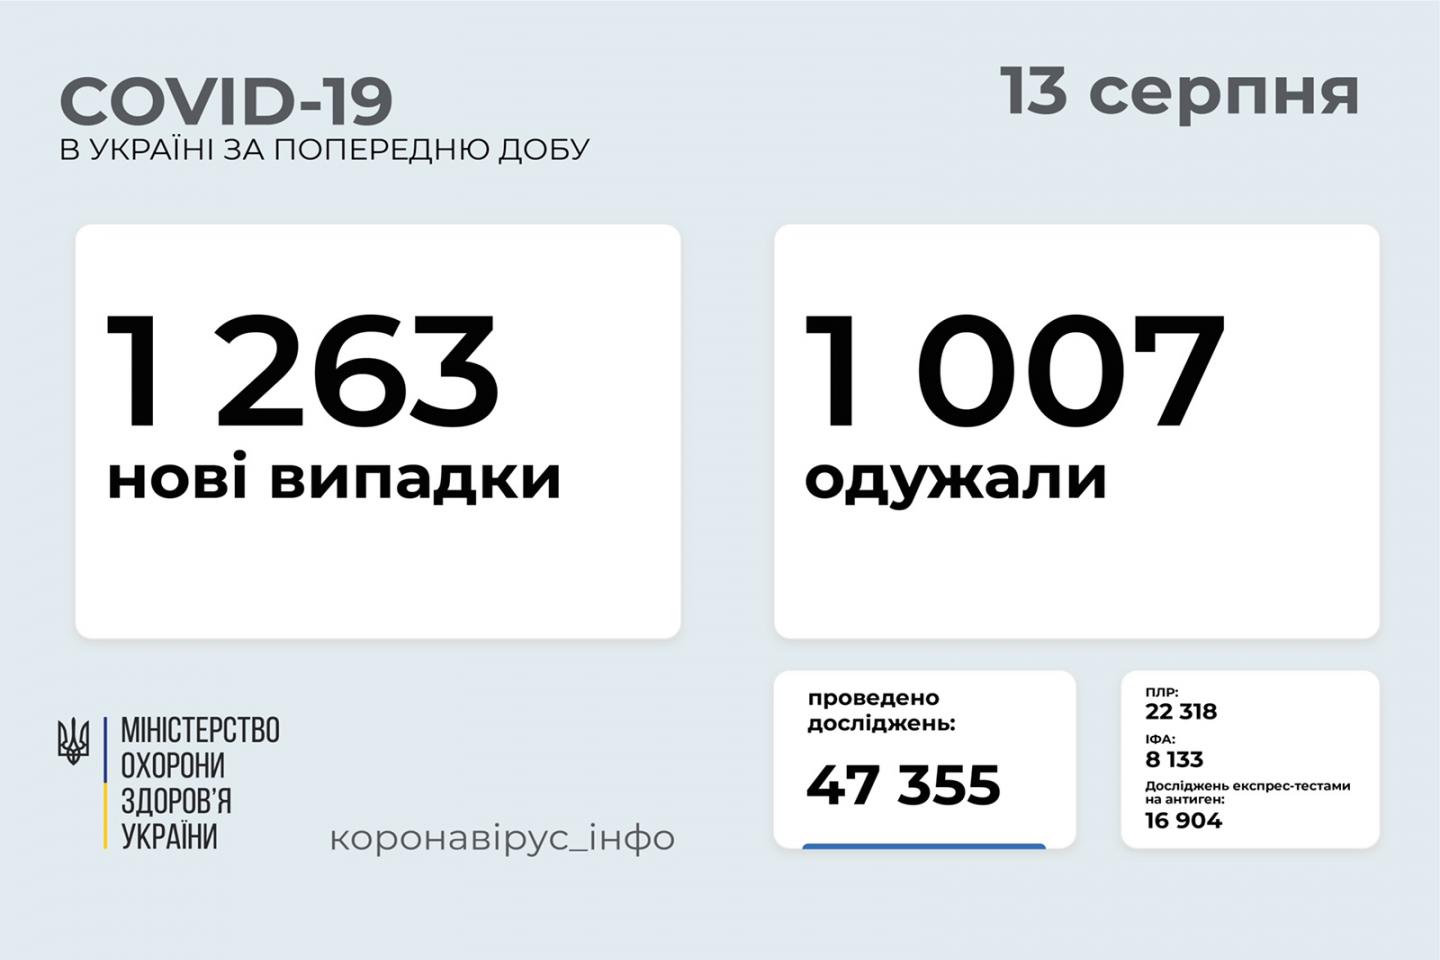 http://dunrada.gov.ua/uploadfile/archive_news/2021/08/13/2021-08-13_8769/images/images-42384.jpg